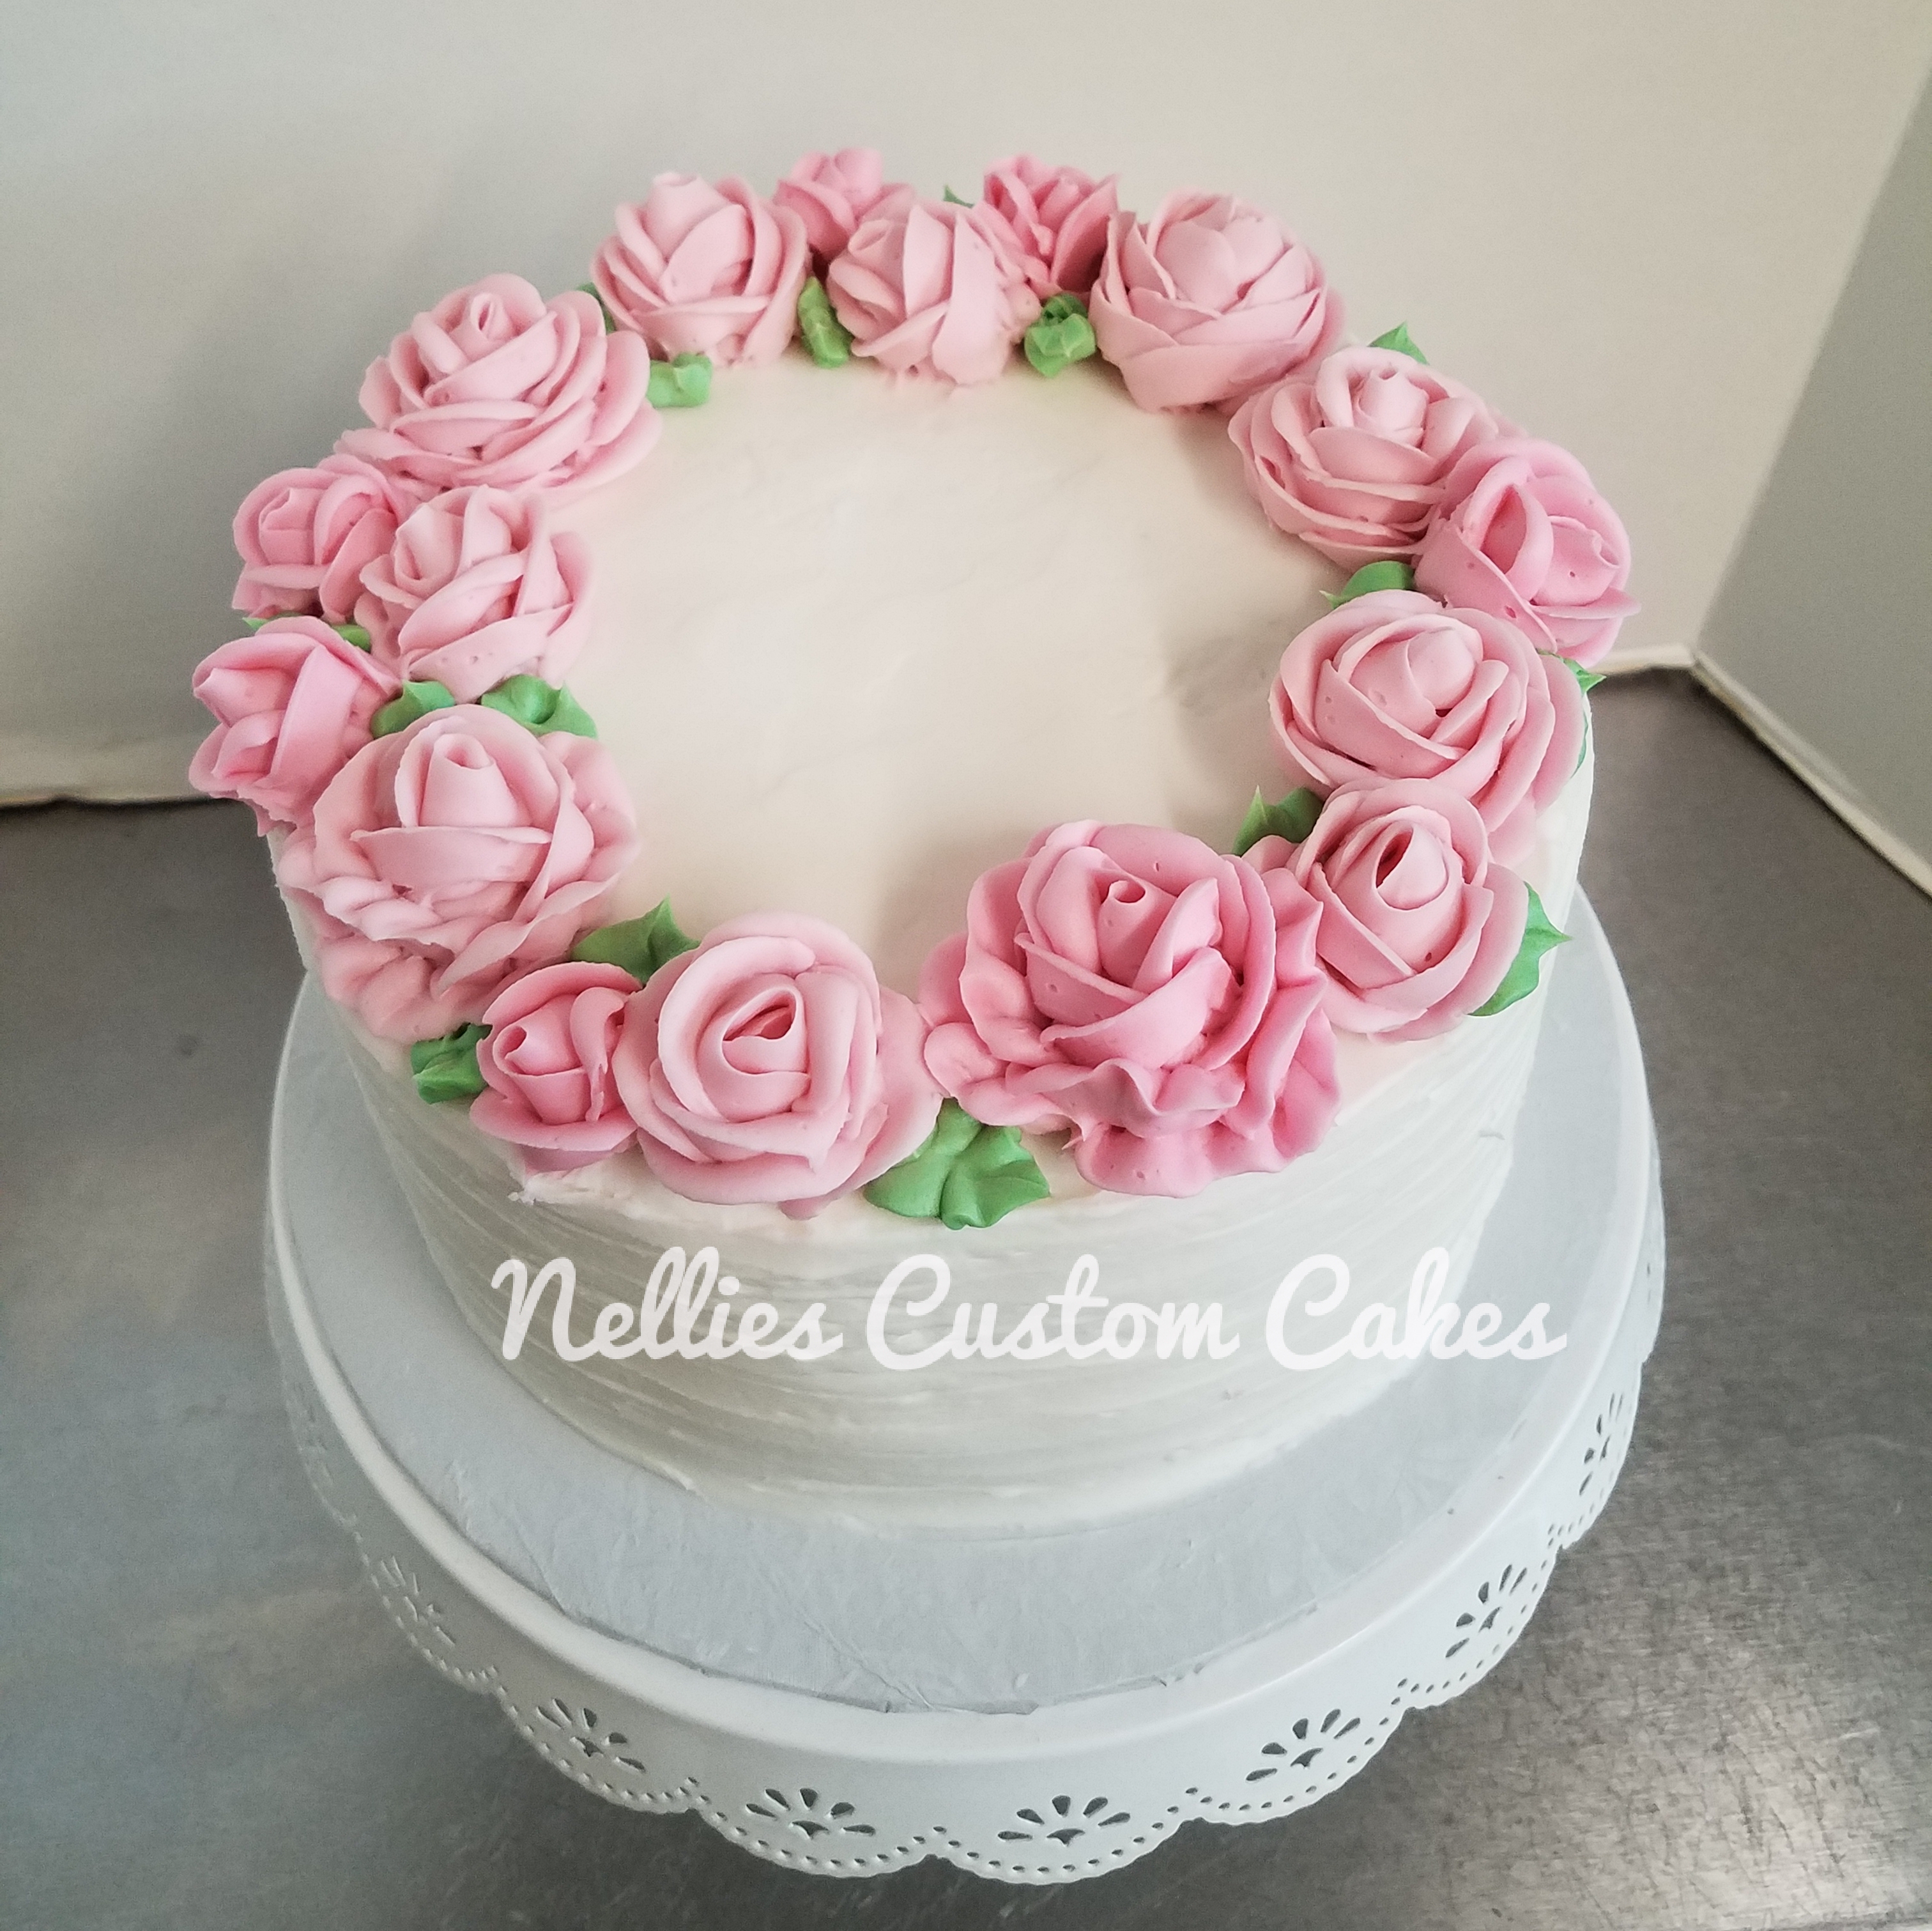 Buttercream floral - Nellie's Custom Cakes, Kansas City